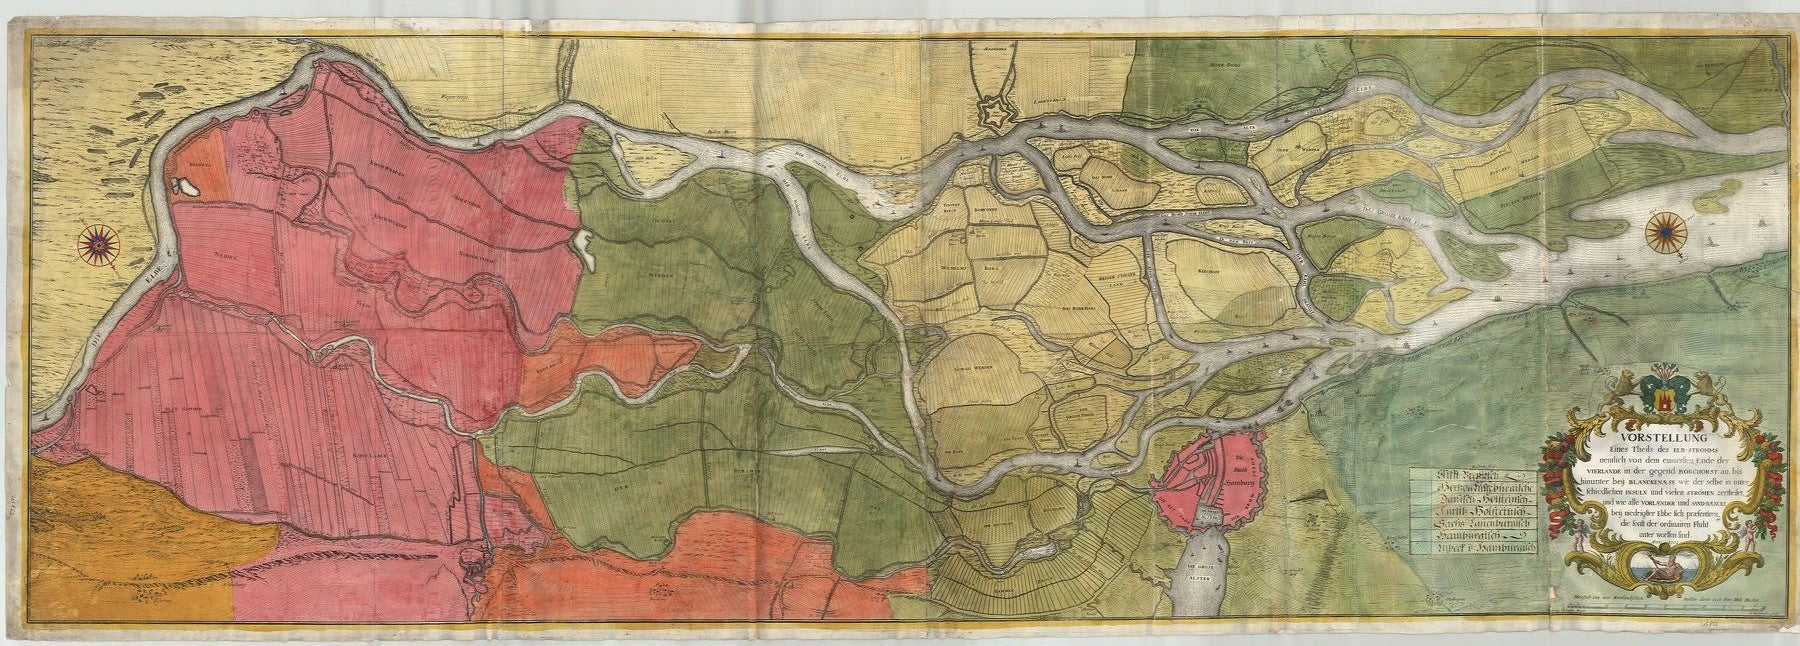 Hamburg - Elbe im Jahr 1702 von Westphalen (nach Hinrich Schaden)